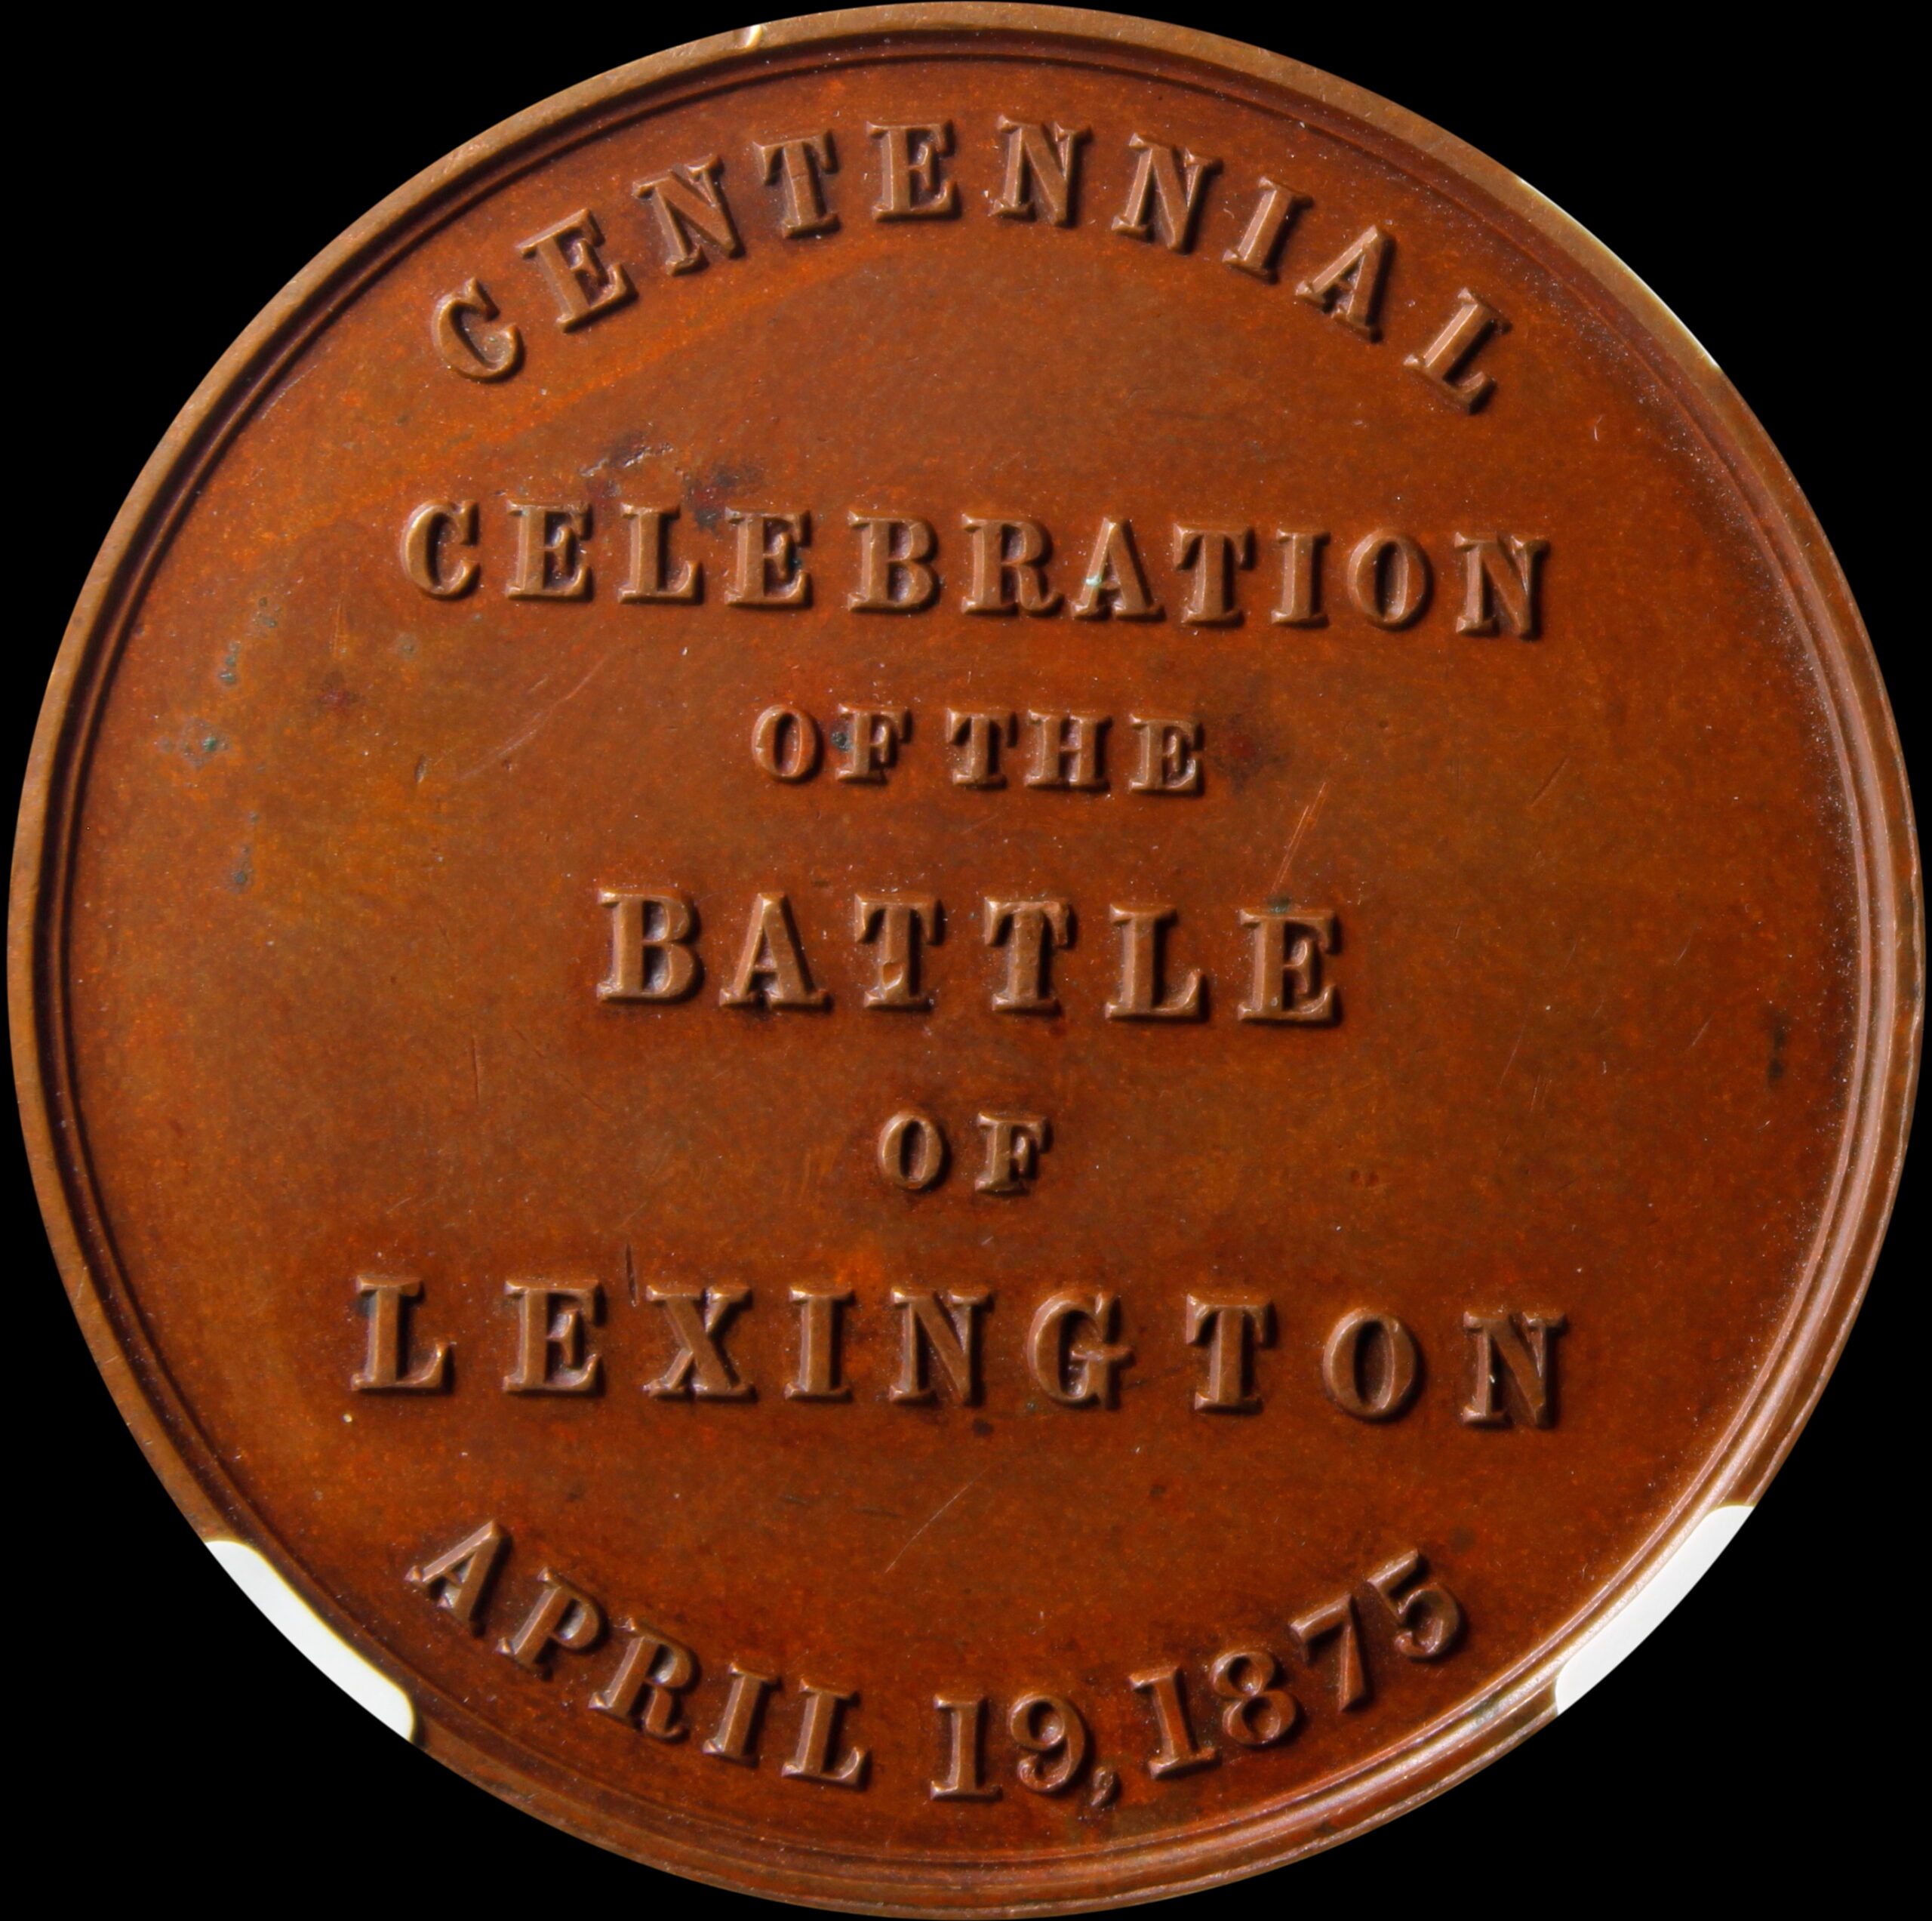 HK-17 1875 Battle of Lexington Centennial SCD